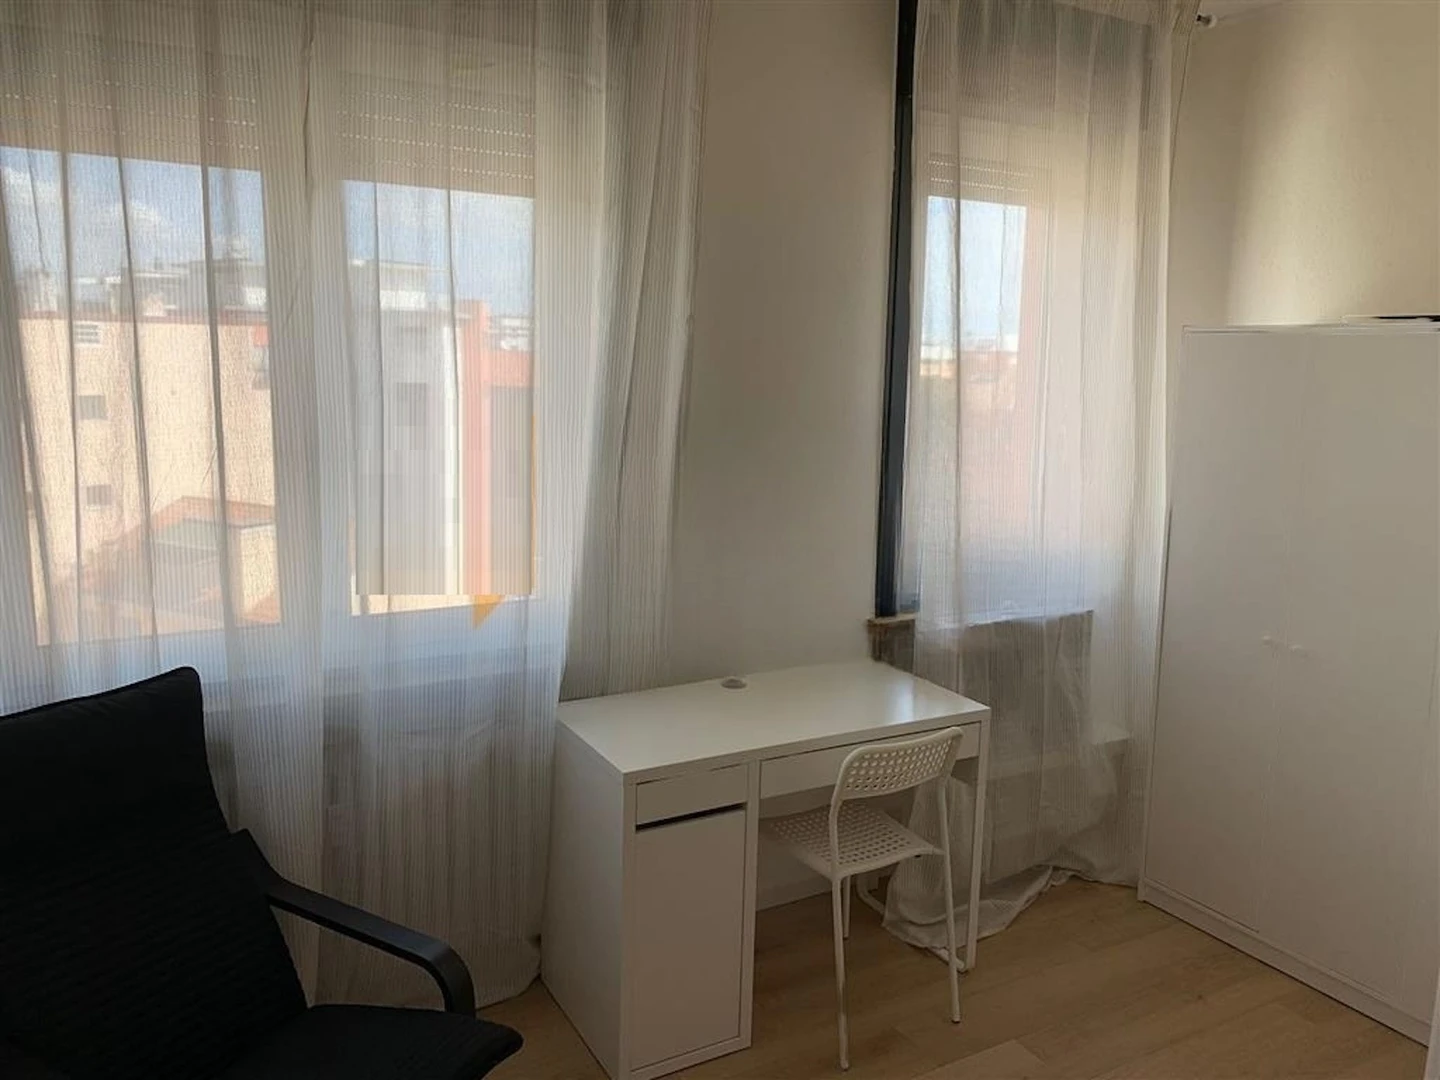 Chambre à louer dans un appartement en colocation à Venezia